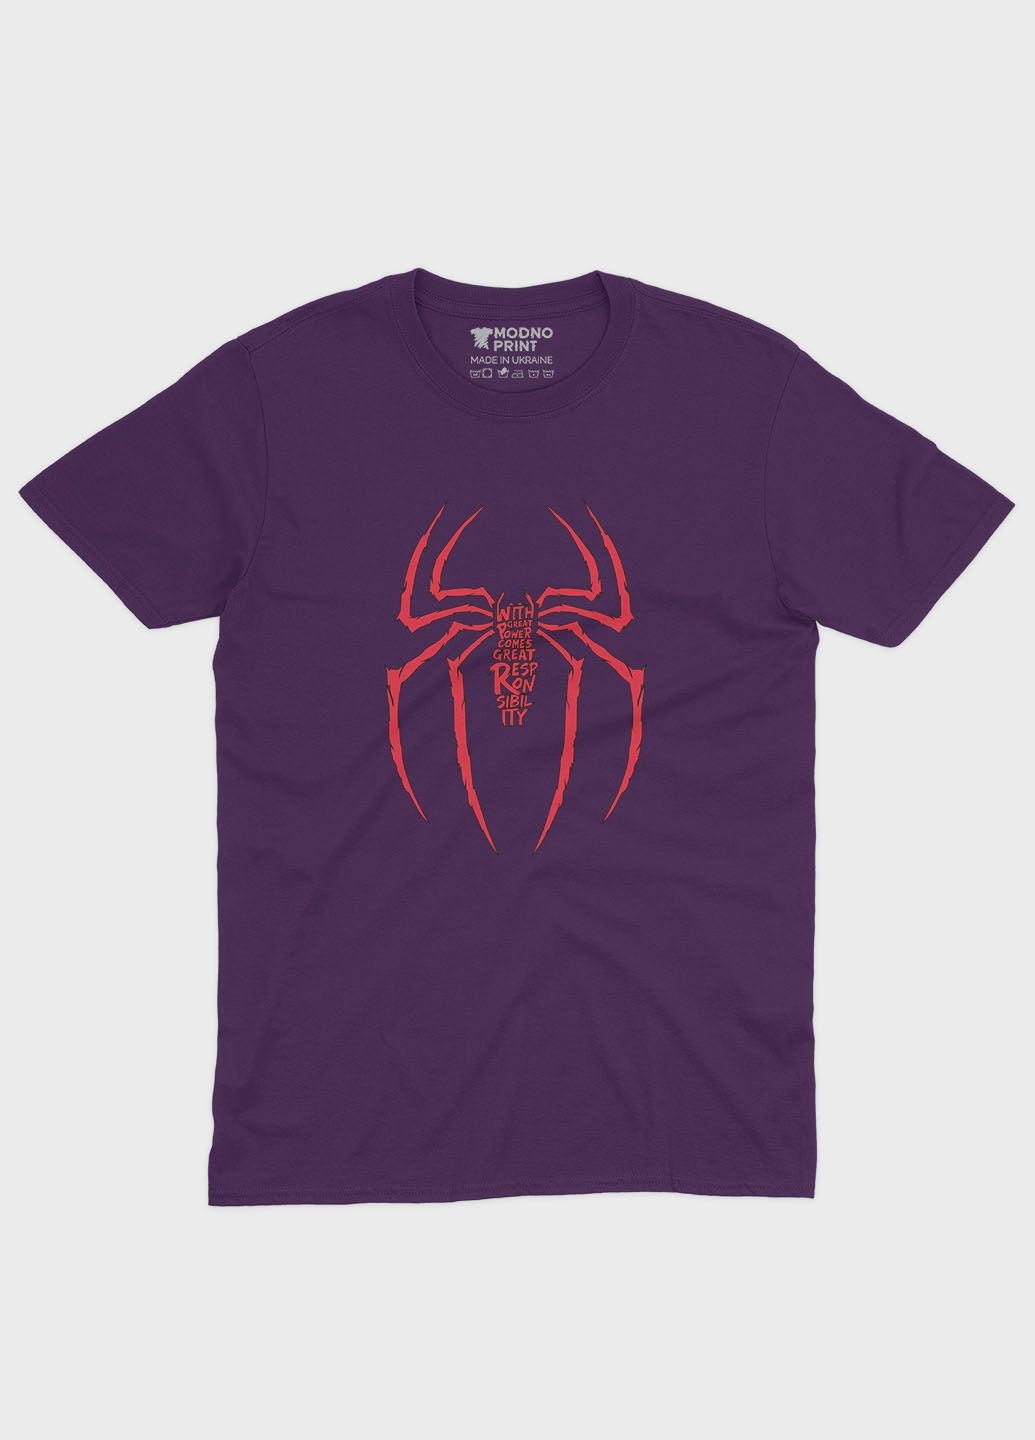 Фиолетовая демисезонная футболка для девочки с принтом супергероя - человек-паук (ts001-1-dby-006-014-046-g) Modno